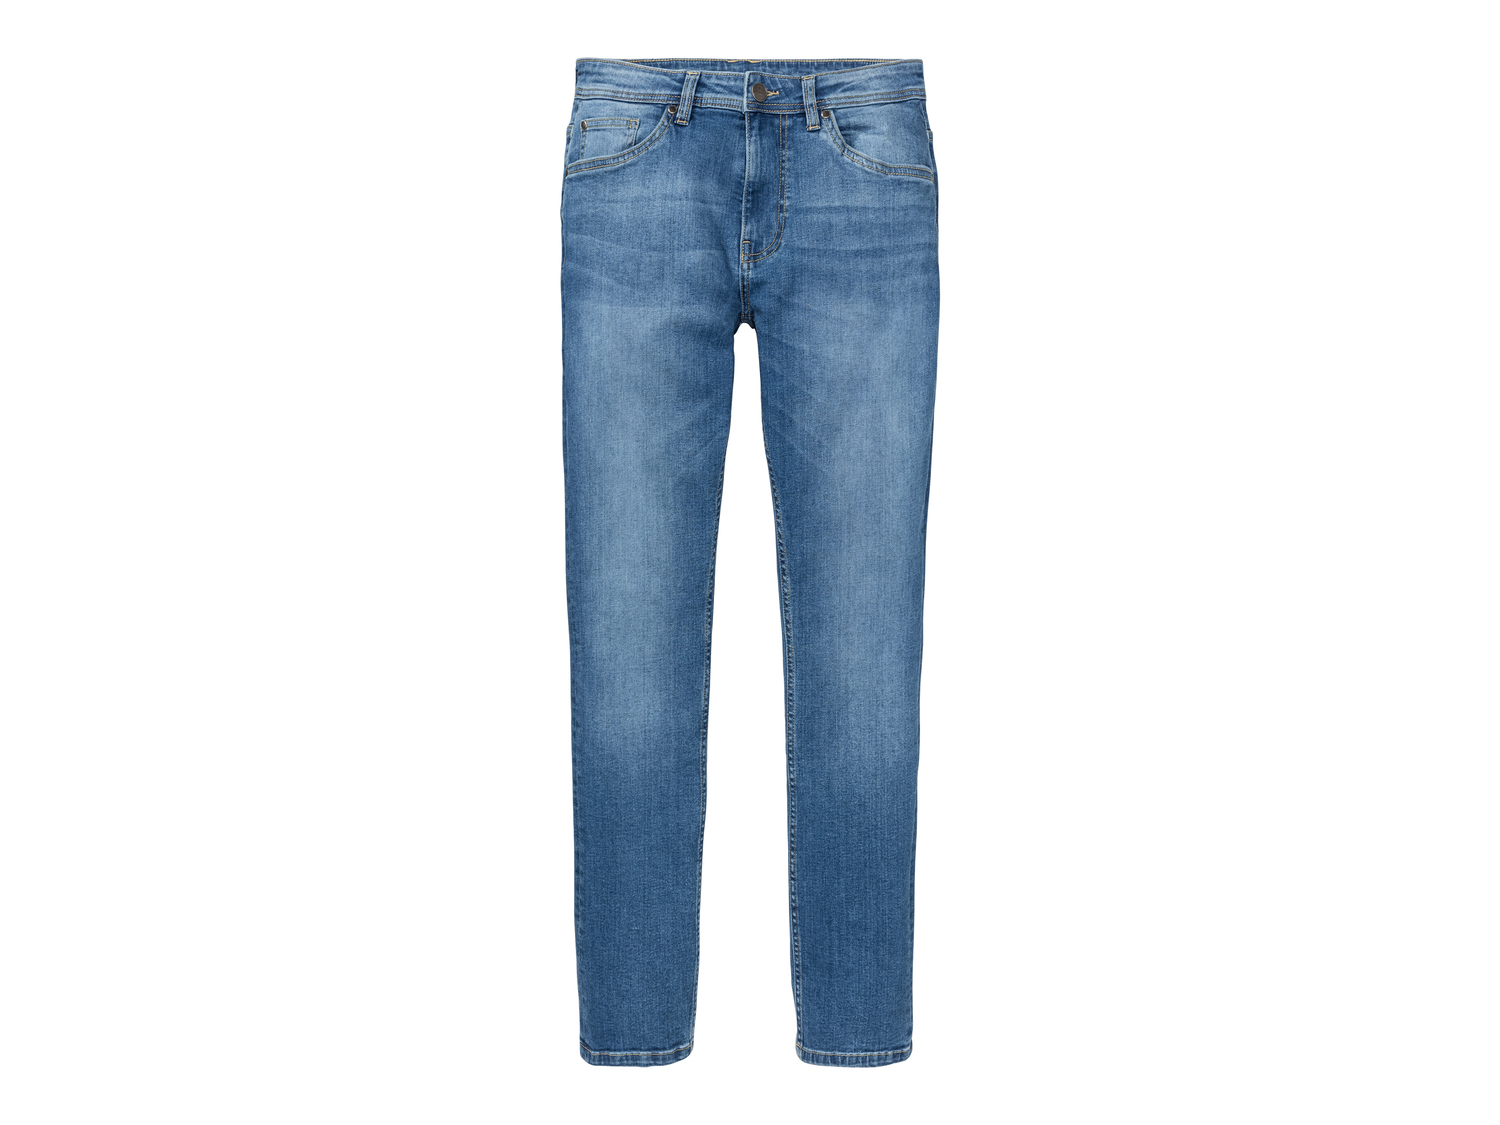 Jeans Slim Fit da uomo Livergy, prezzo 12.99 &#8364; 
Misure: 46-54
Taglie disponibili

Caratteristiche

- ...